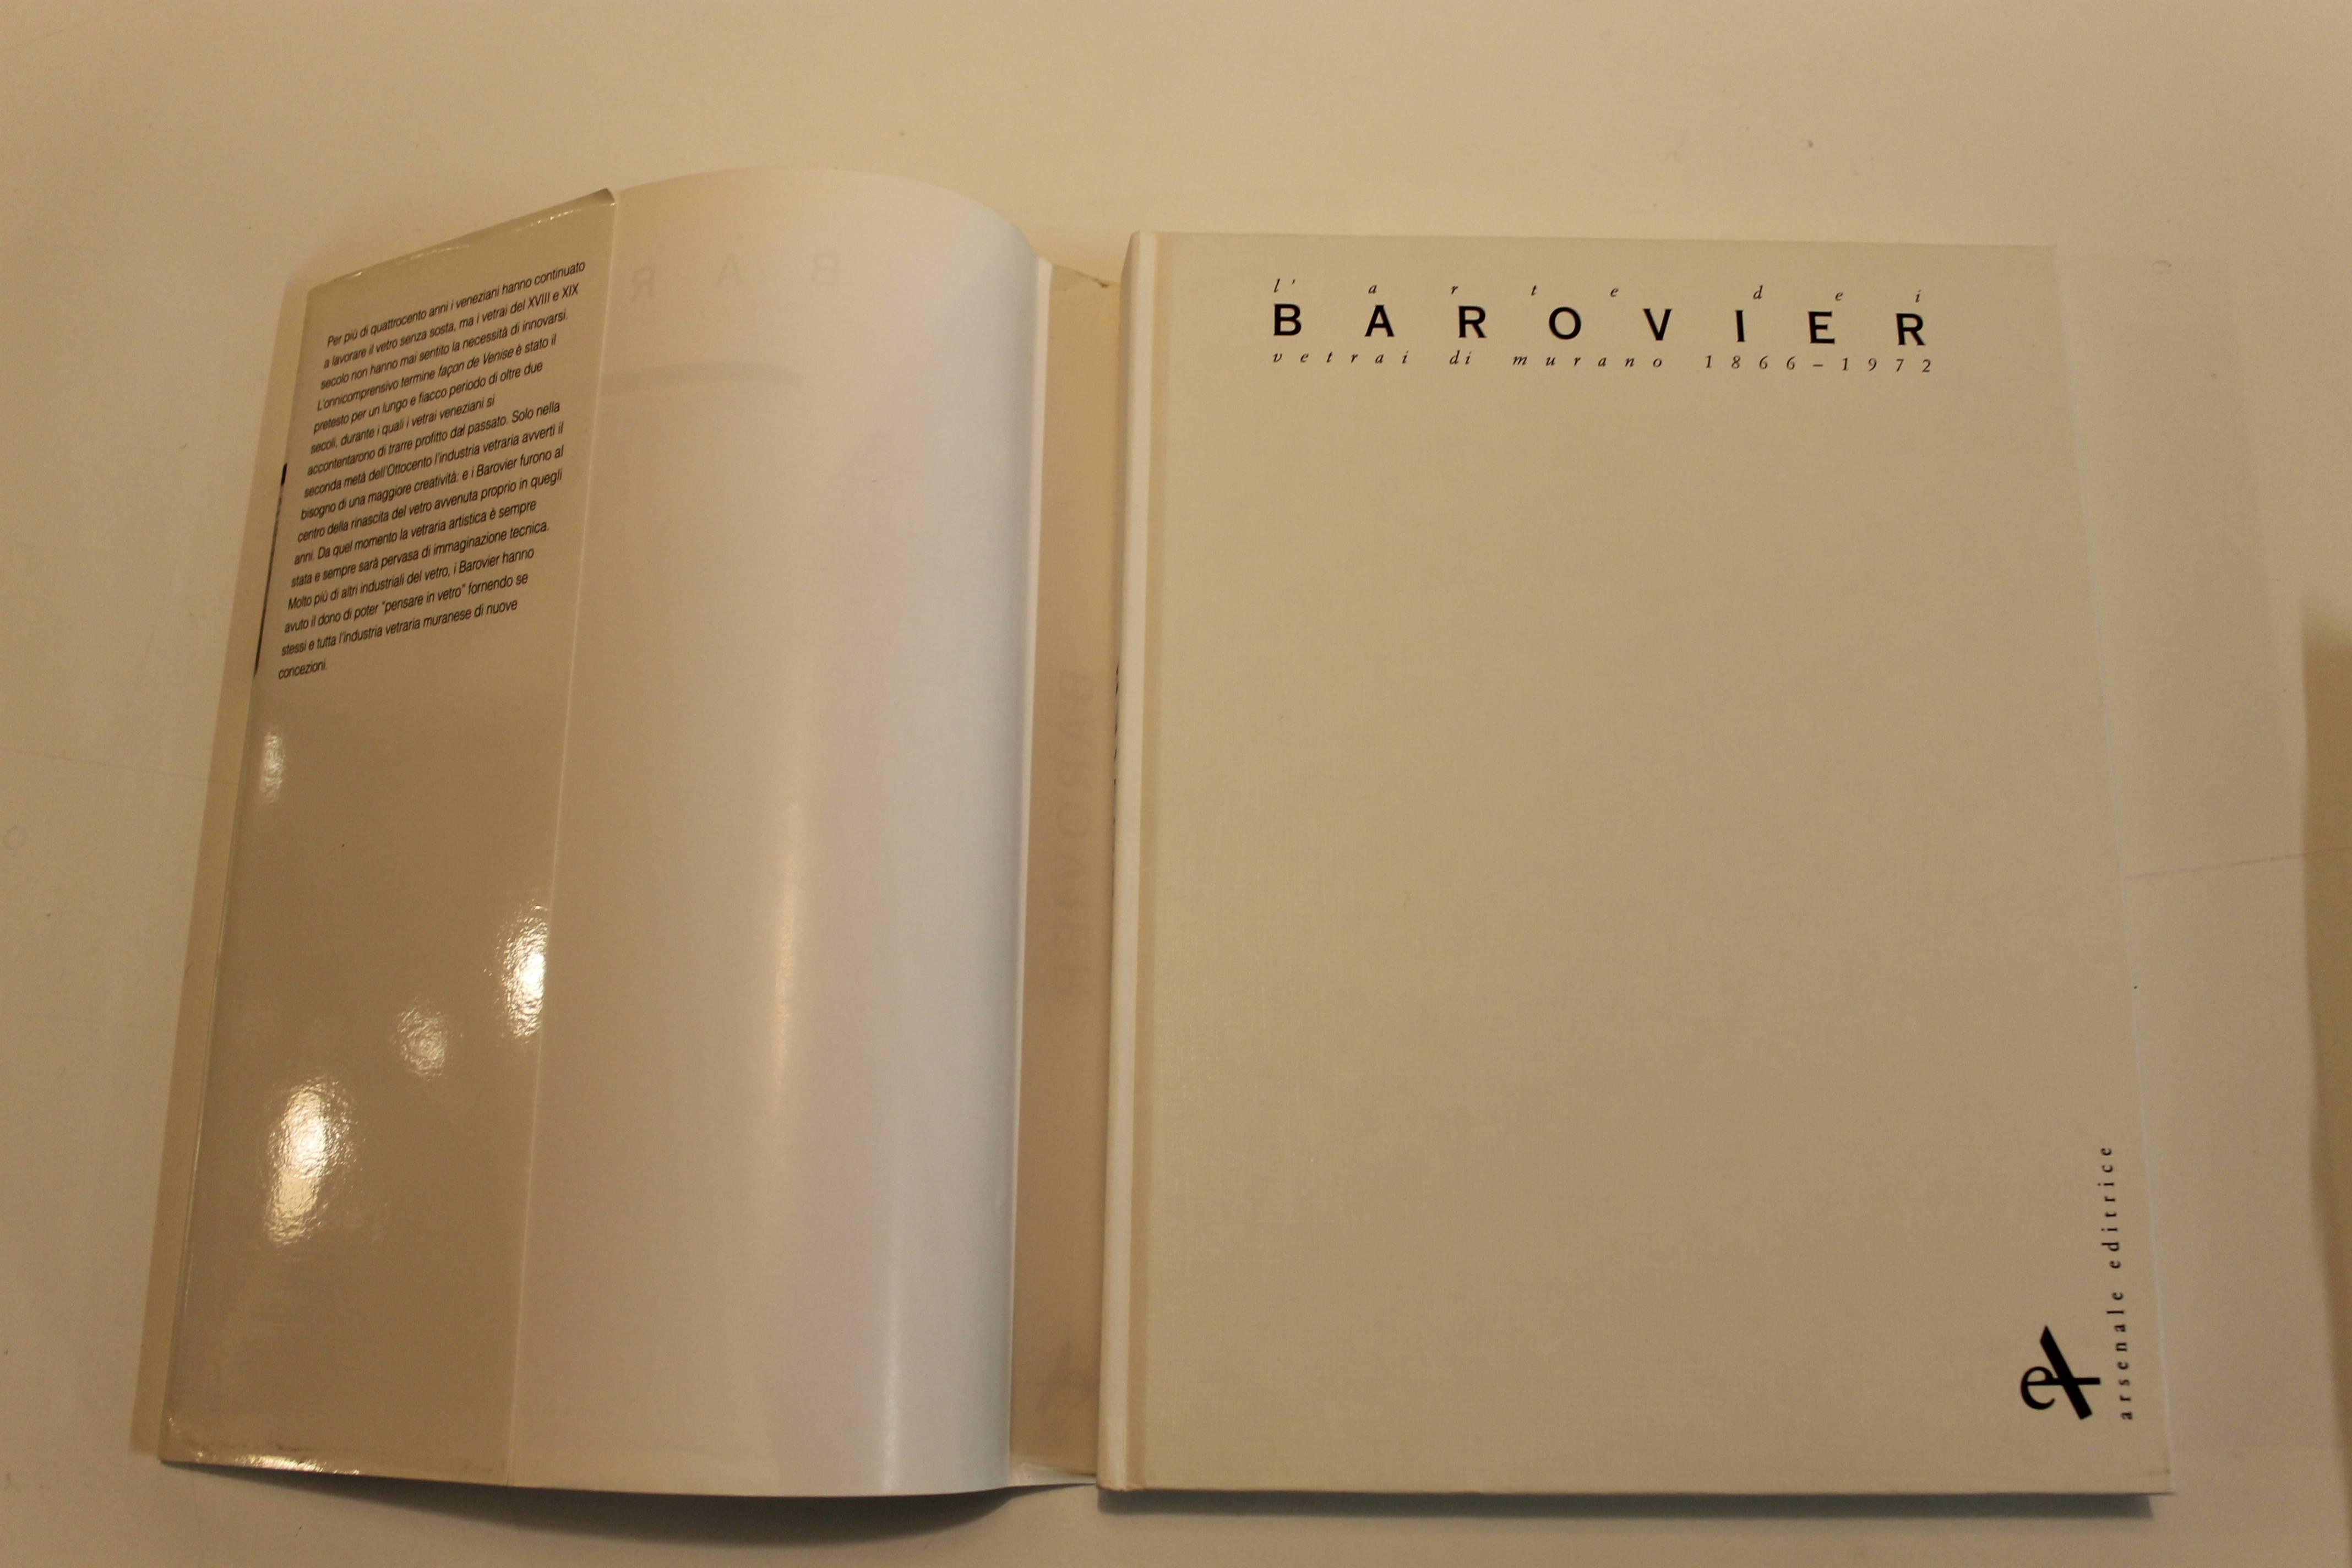 Barovier e Toso livre de Marina Barovier 1993.

212 pages avec 184 illustrations en couleur de 1866 à 1972.